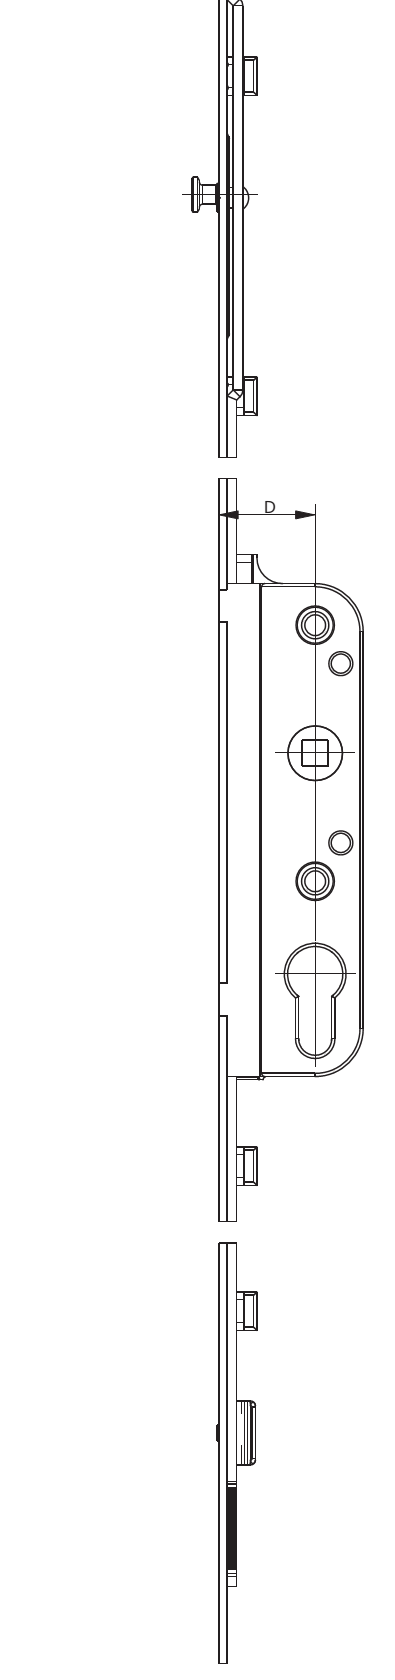 GU-ITALIA -  Cremonese GU-966 per complanare parallelo altezza maniglia fissa con foro cilindro - gr / dim. 1840 - entrata 40 - alt. man. 980 - lbb/hbb 2121 - 2370